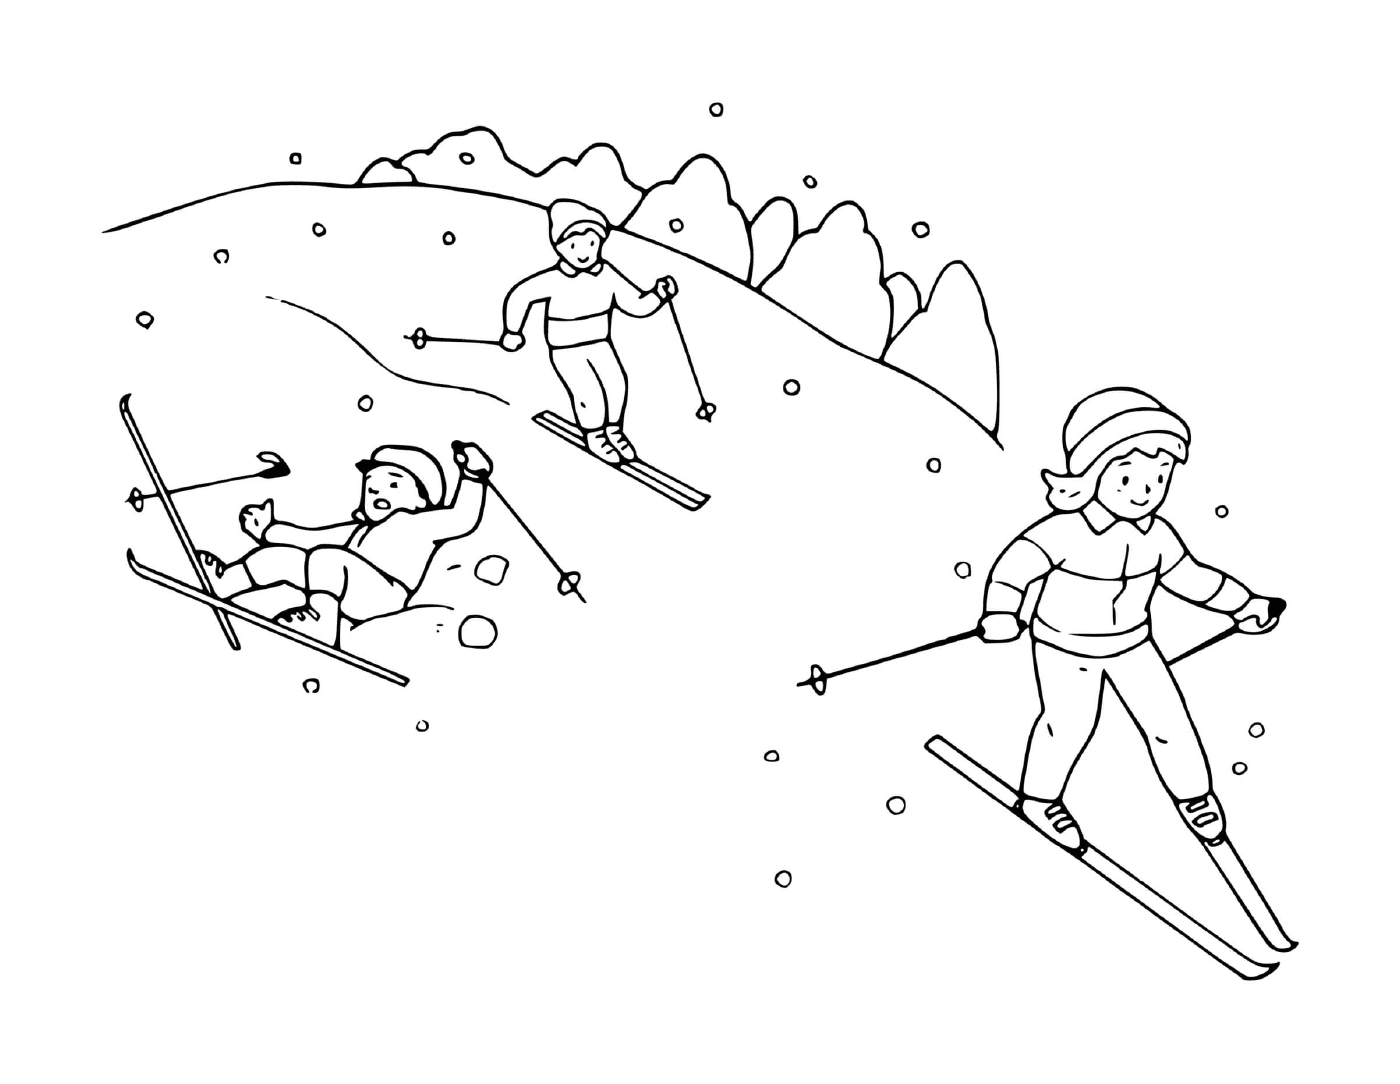   Famille s'amuse skier ensemble 